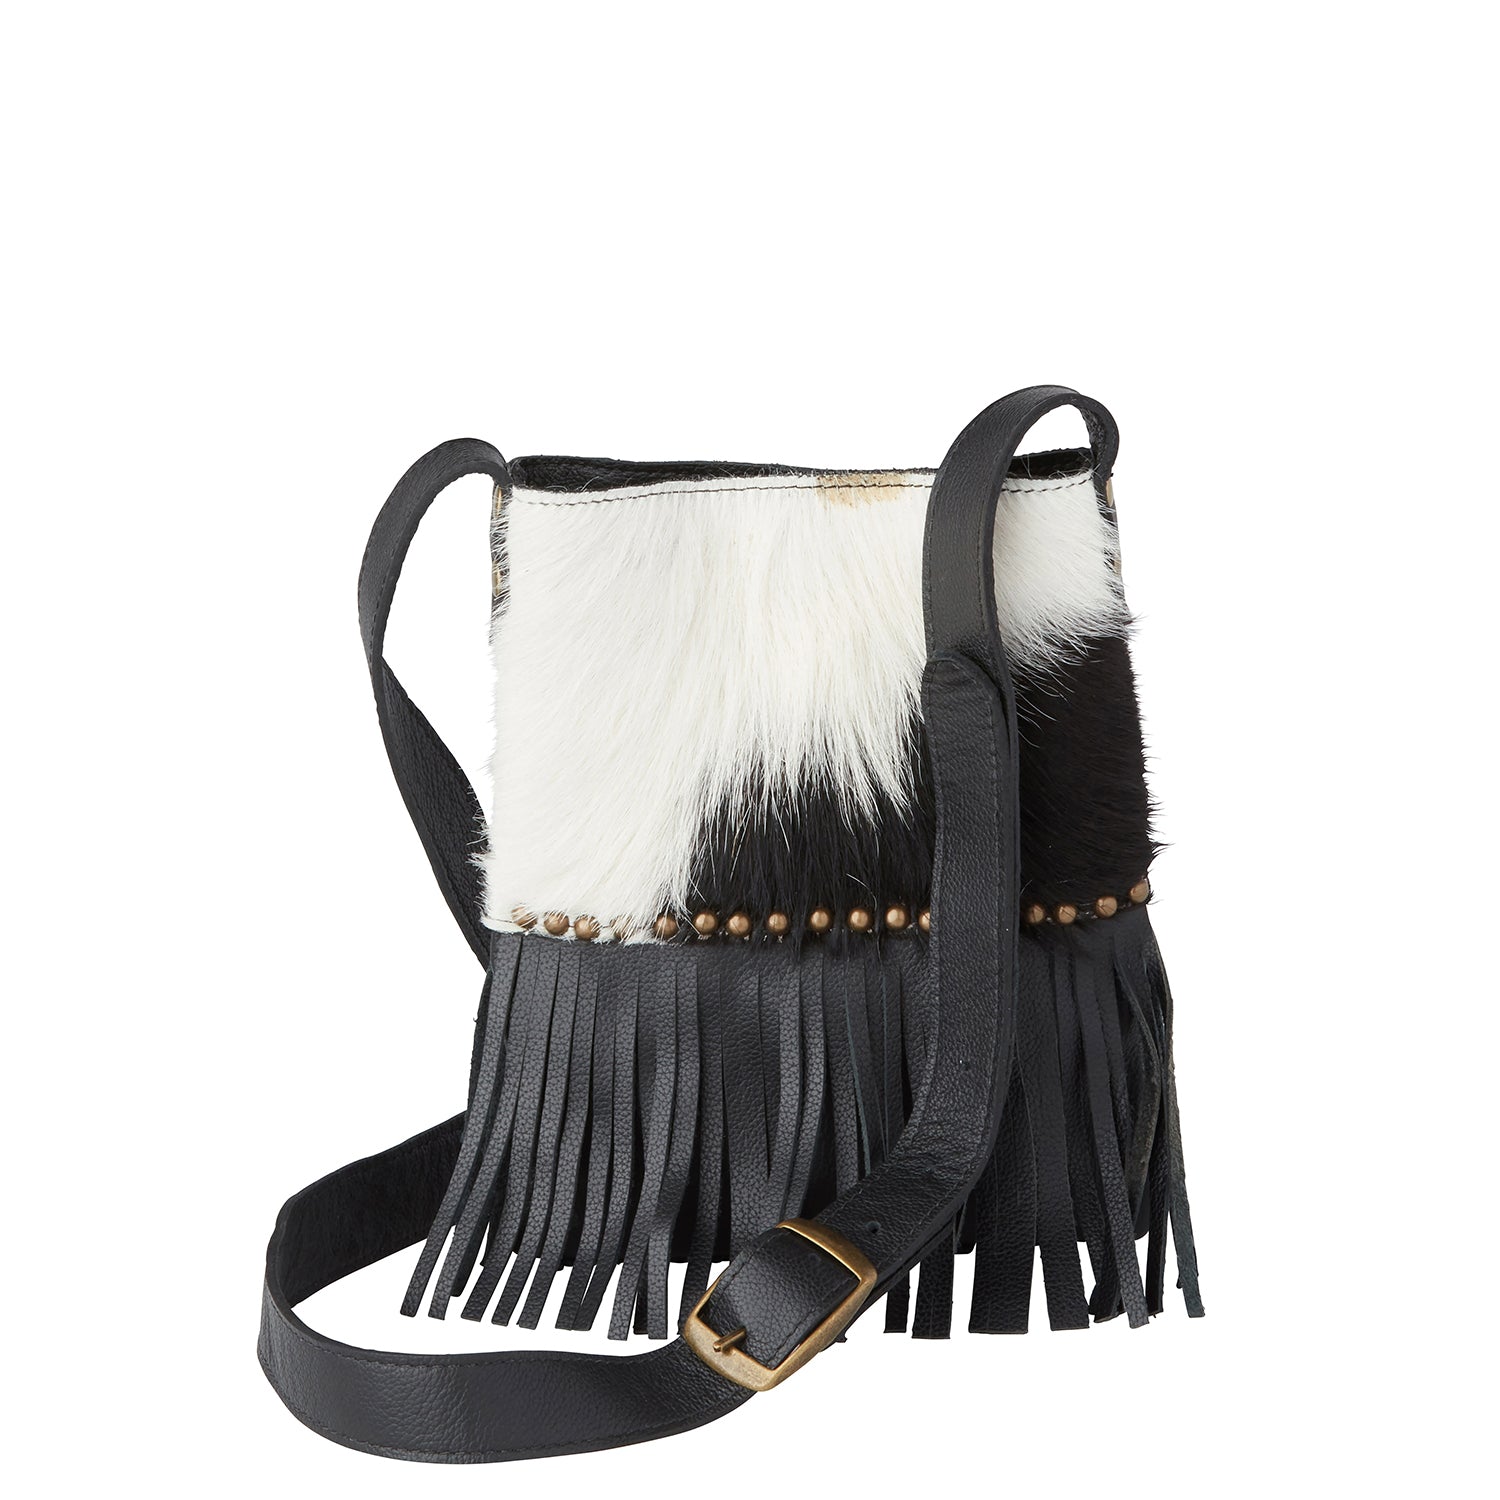 Cool Black Purse - Black Handbag - Fringe Purse - $30.00 - Lulus